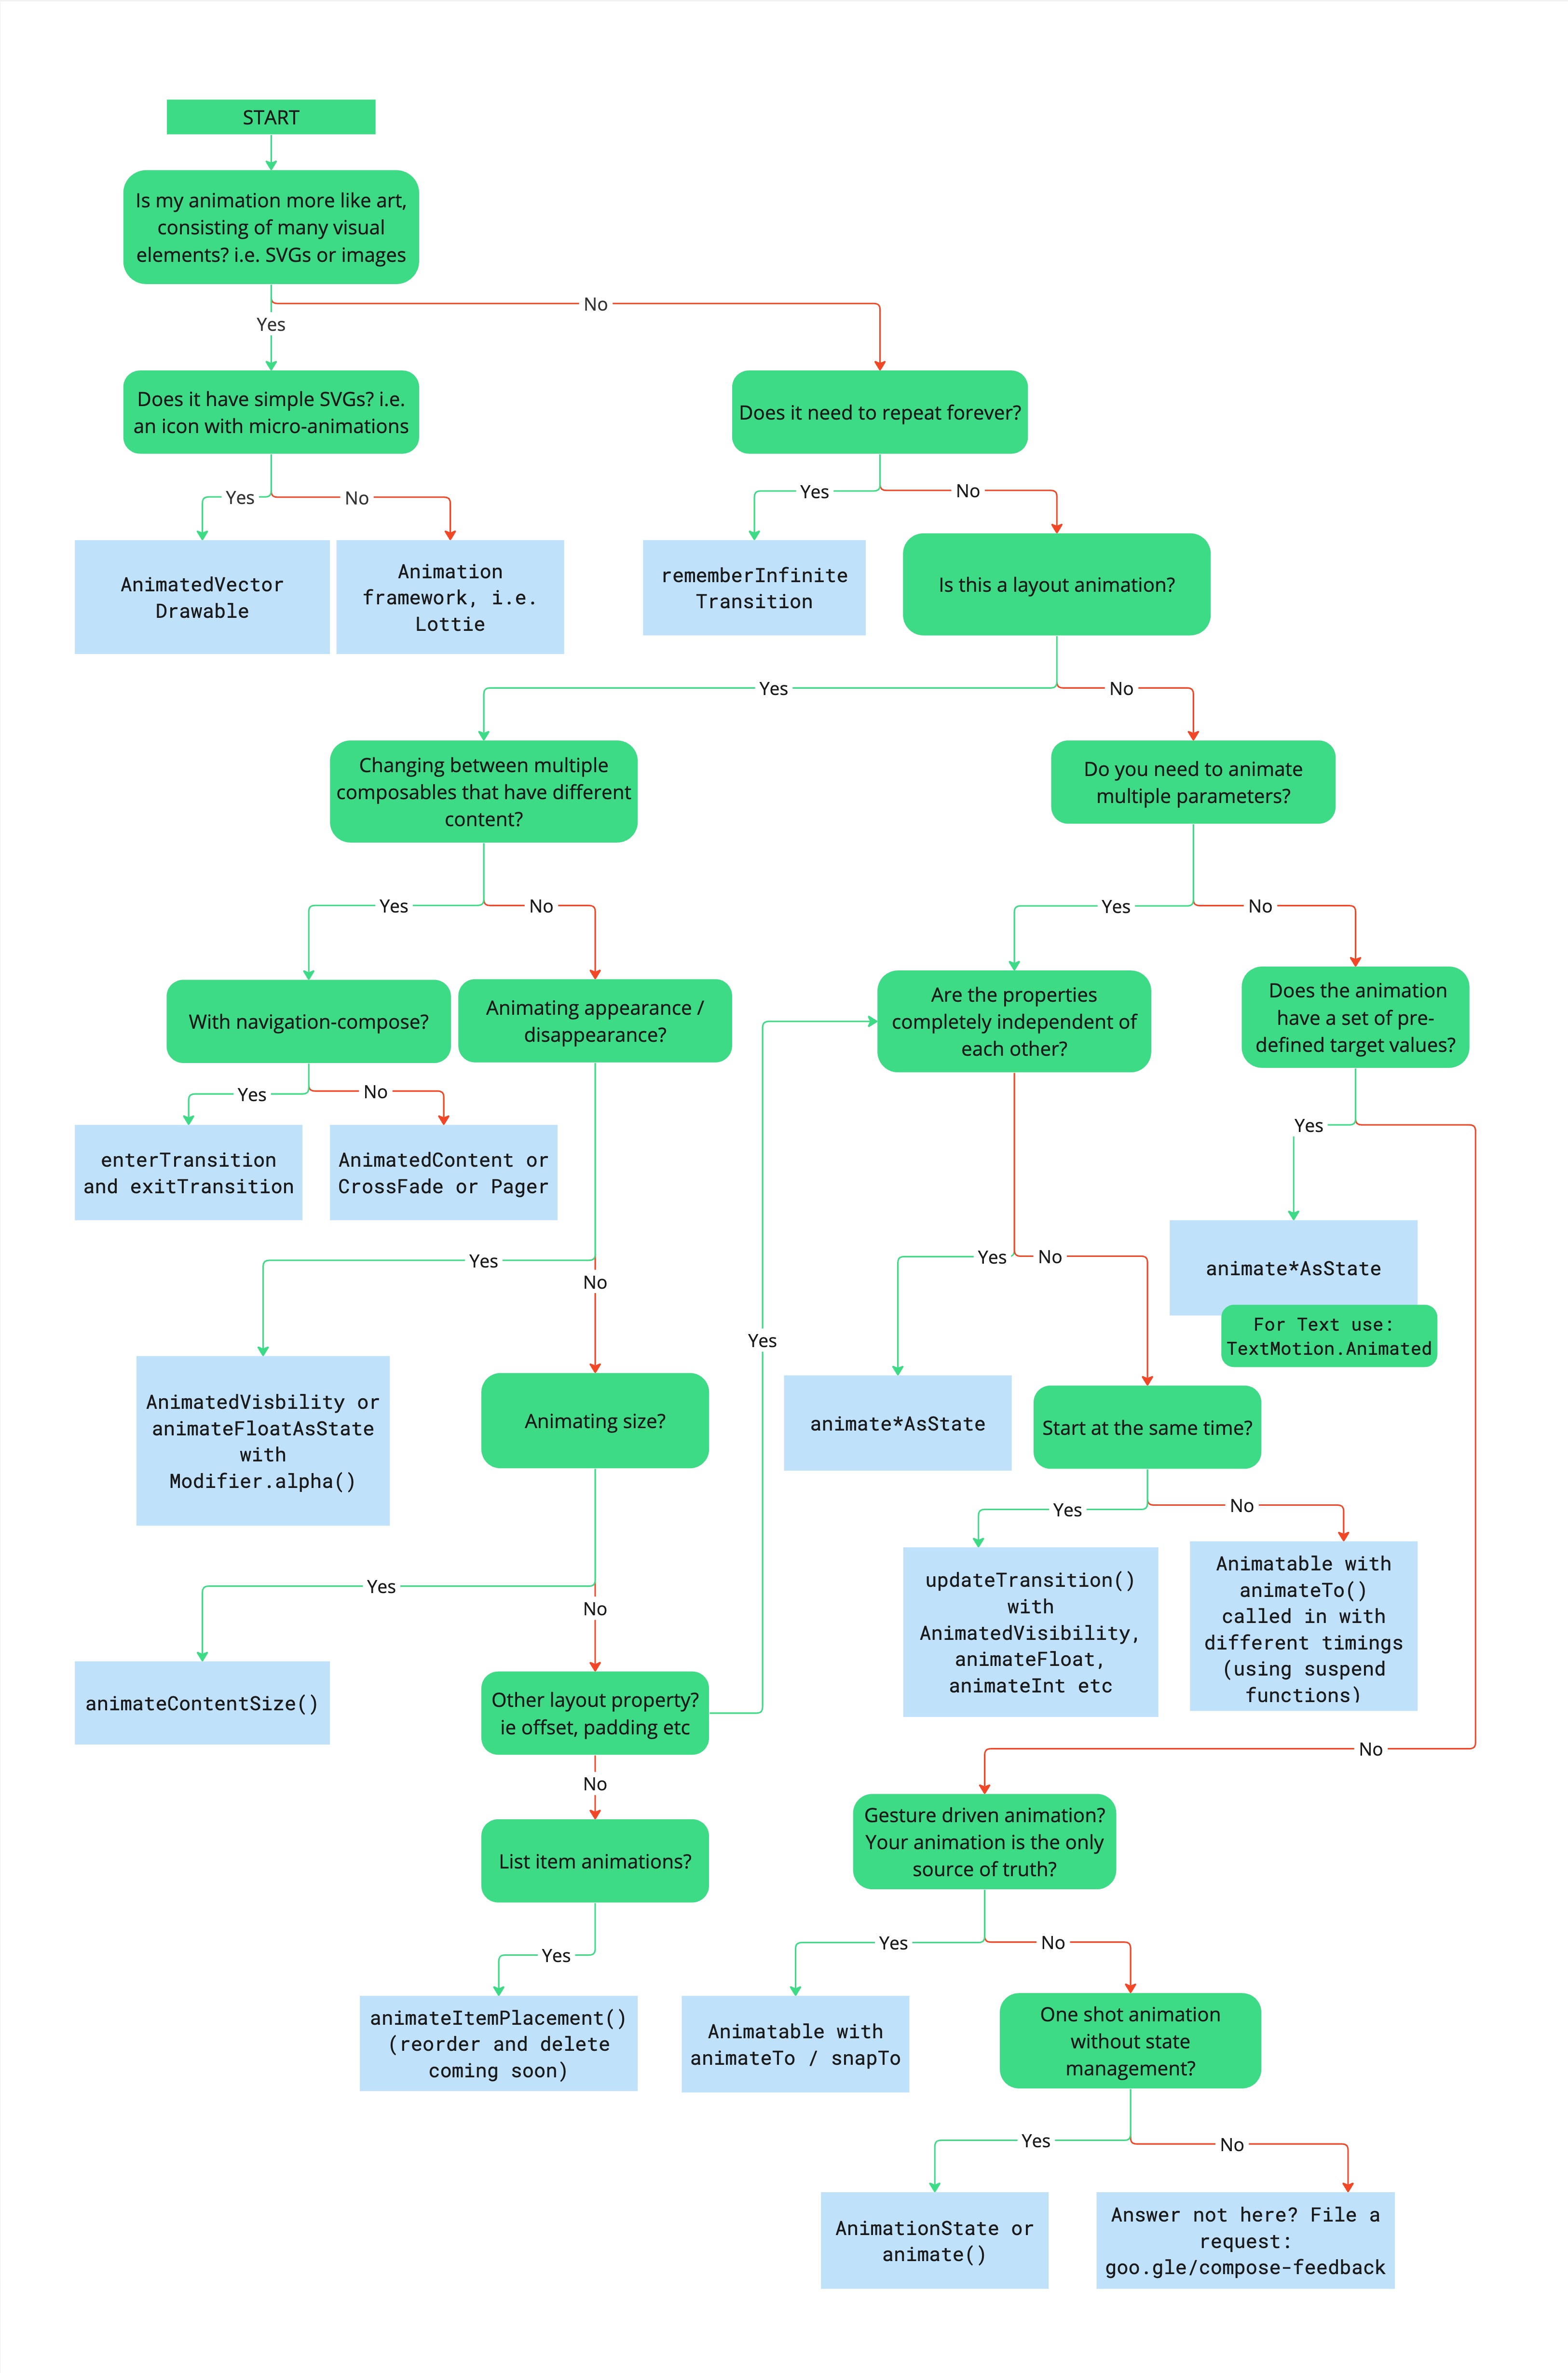 Diagrama de flujo que describe el árbol de decisión para elegir la API de Animation apropiada